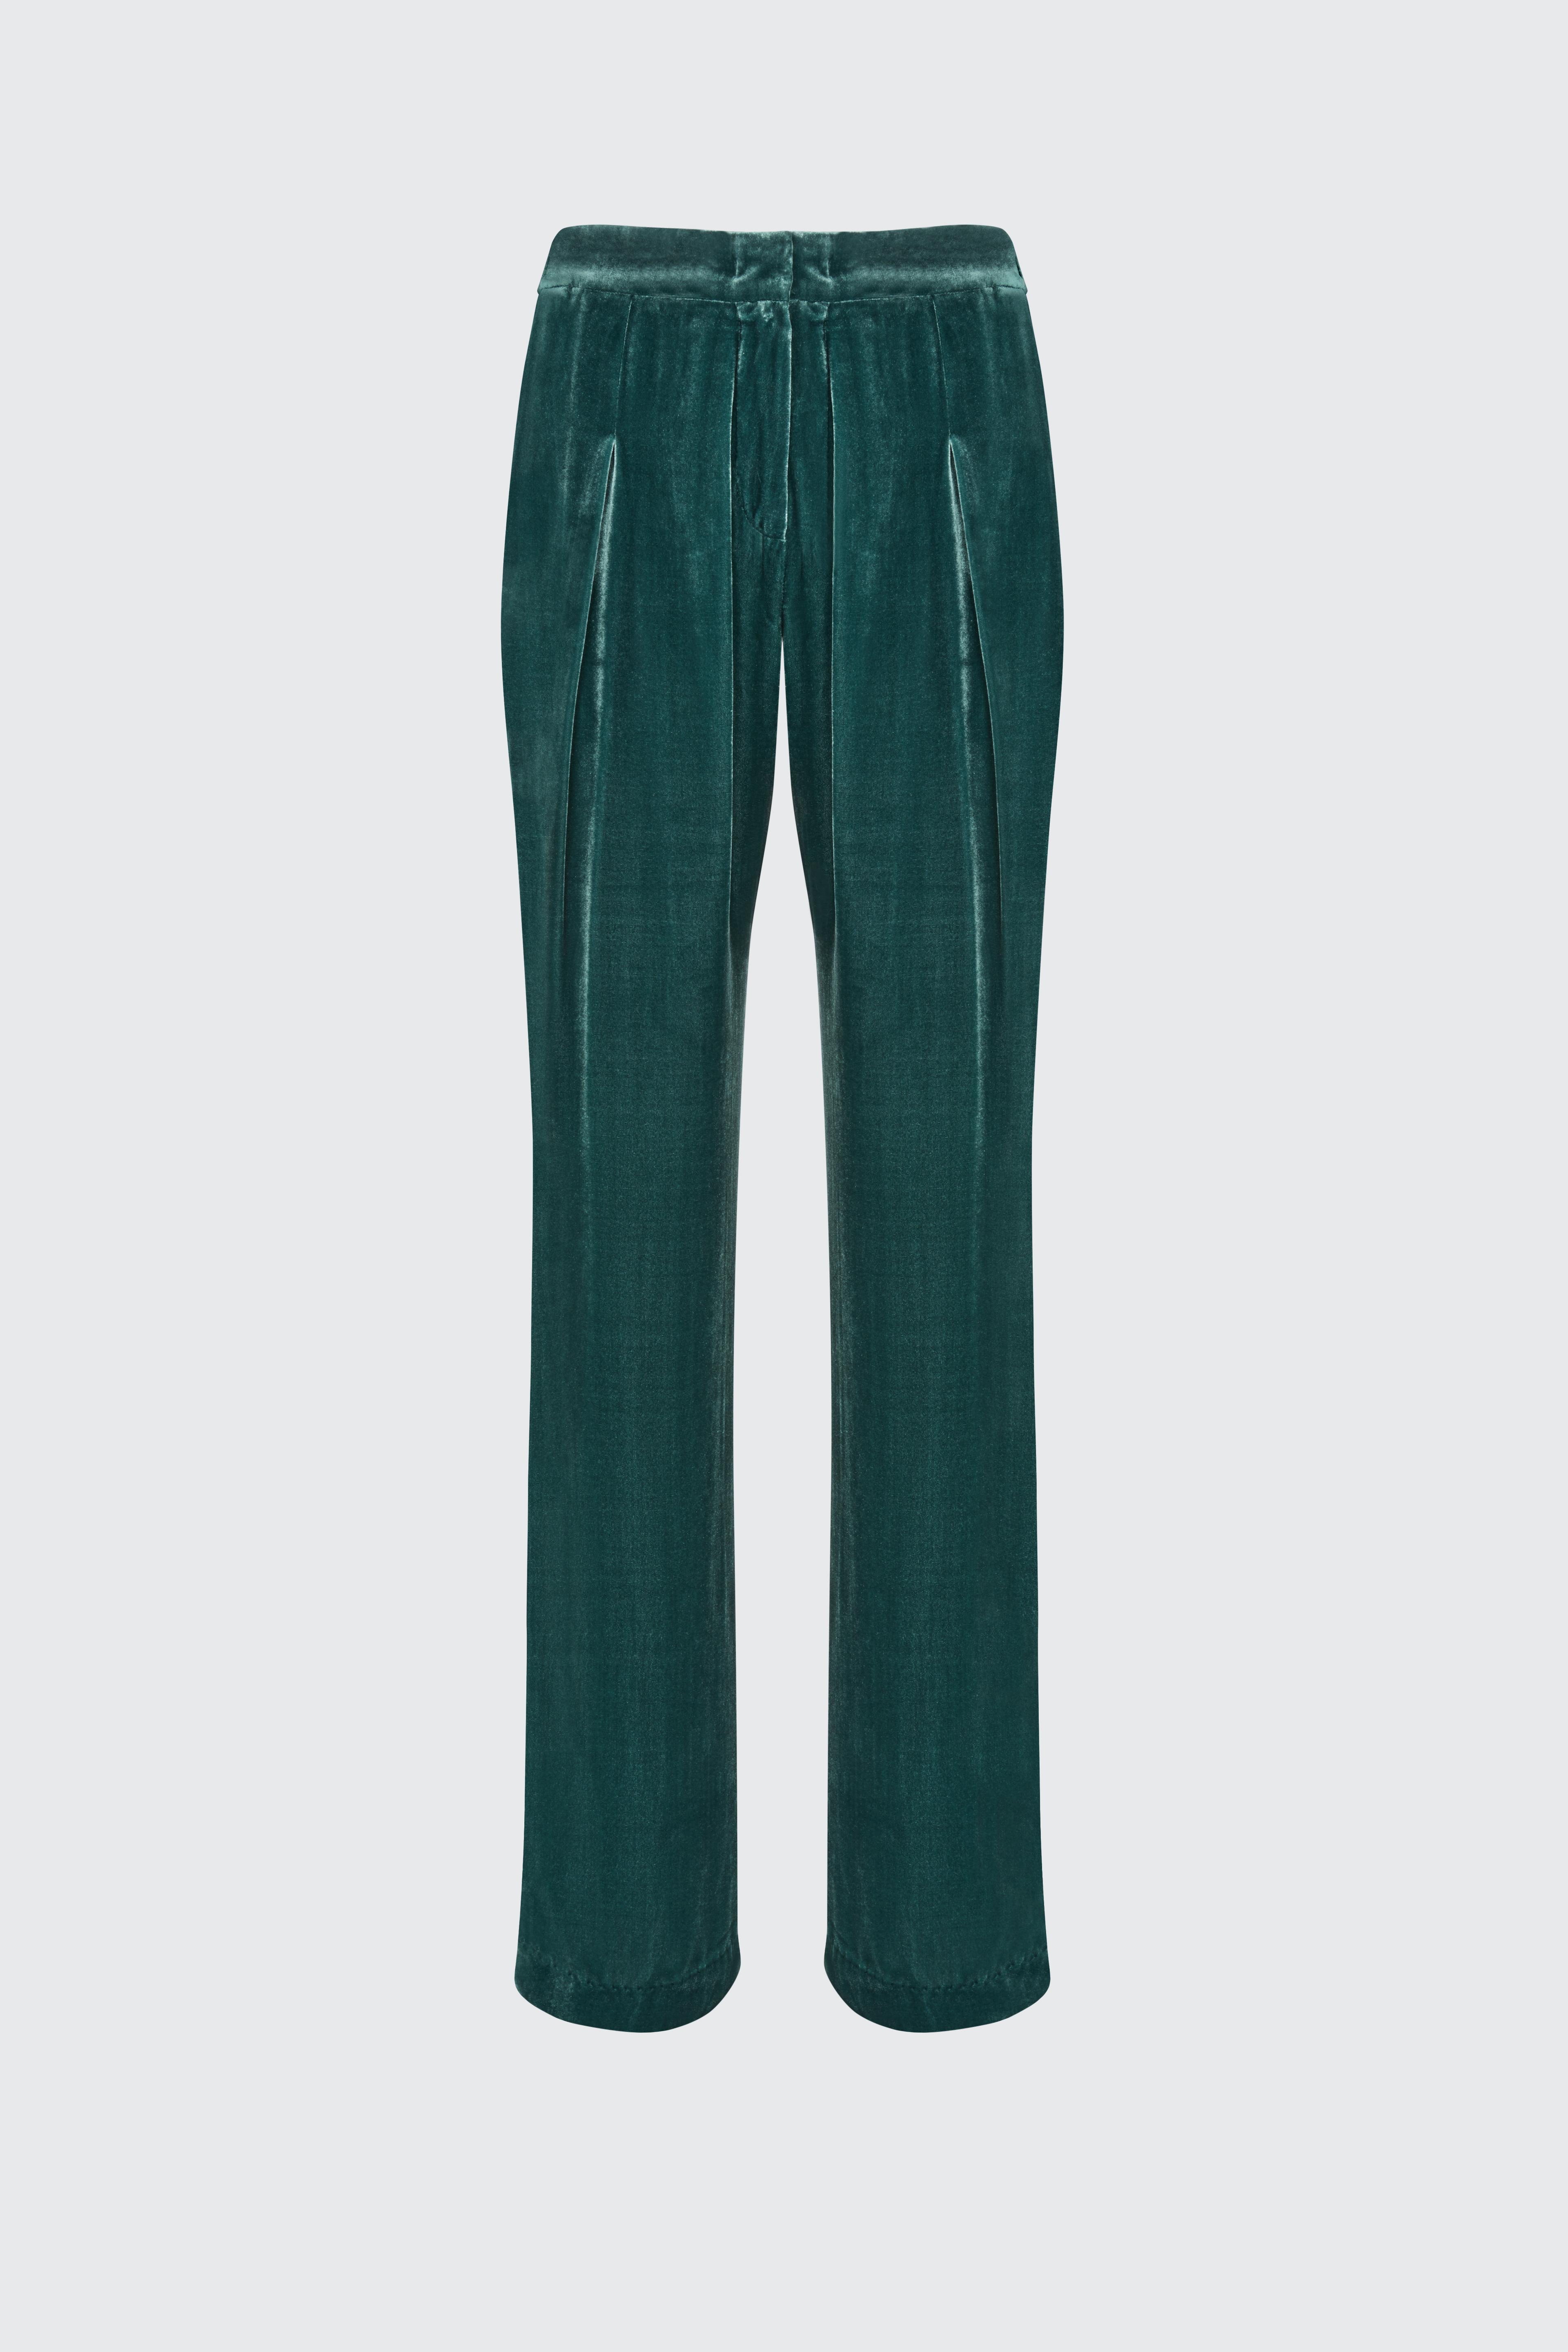 Dorothee Schumacher Velvet Shimmer Trouser in grün (Green) - Lyst